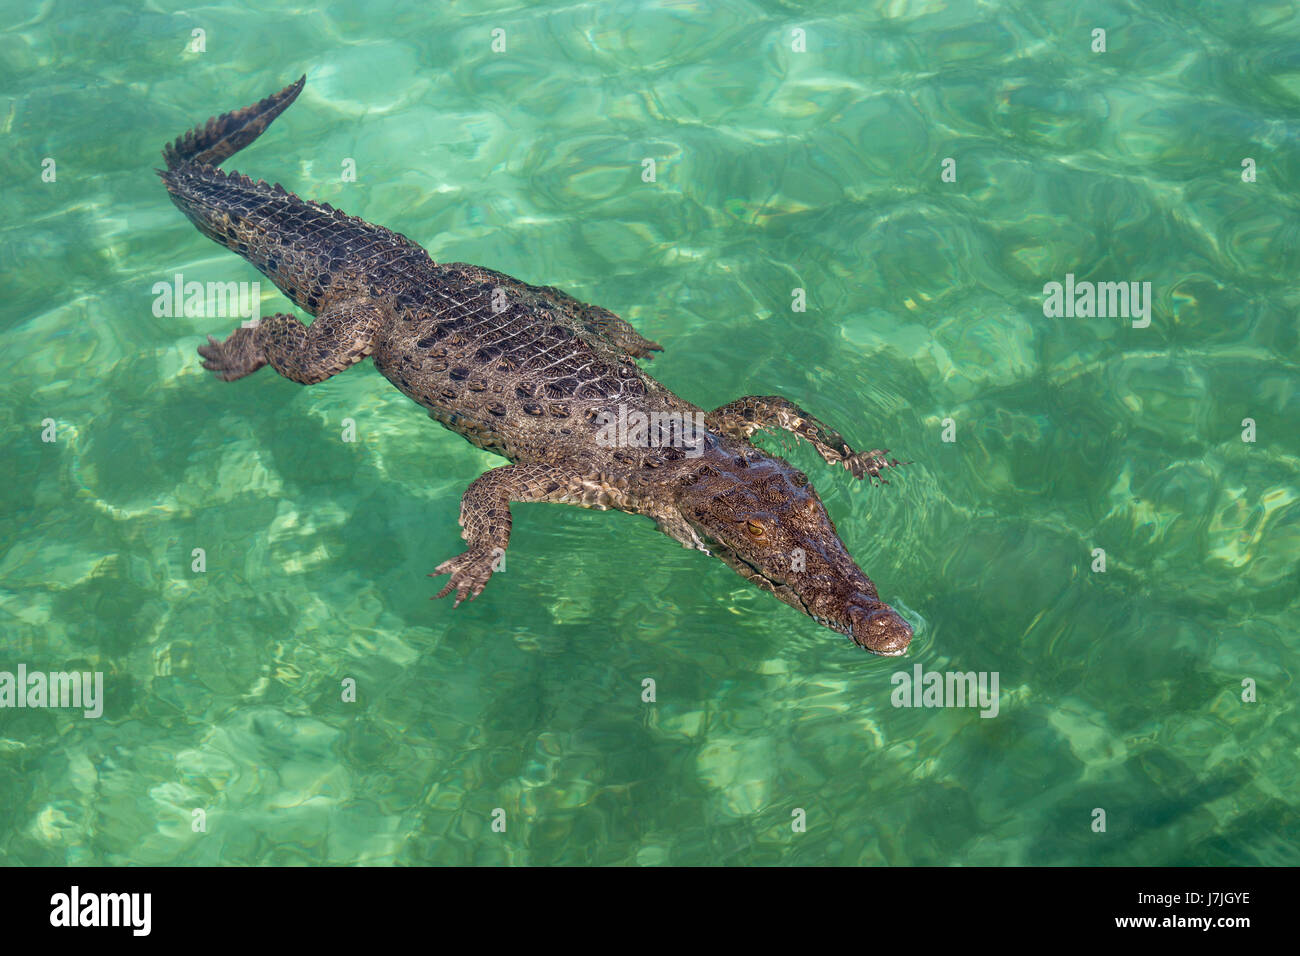 American Crocodile, Crocodylus acutus, Jardines de la Reina, Cuba Stock Photo